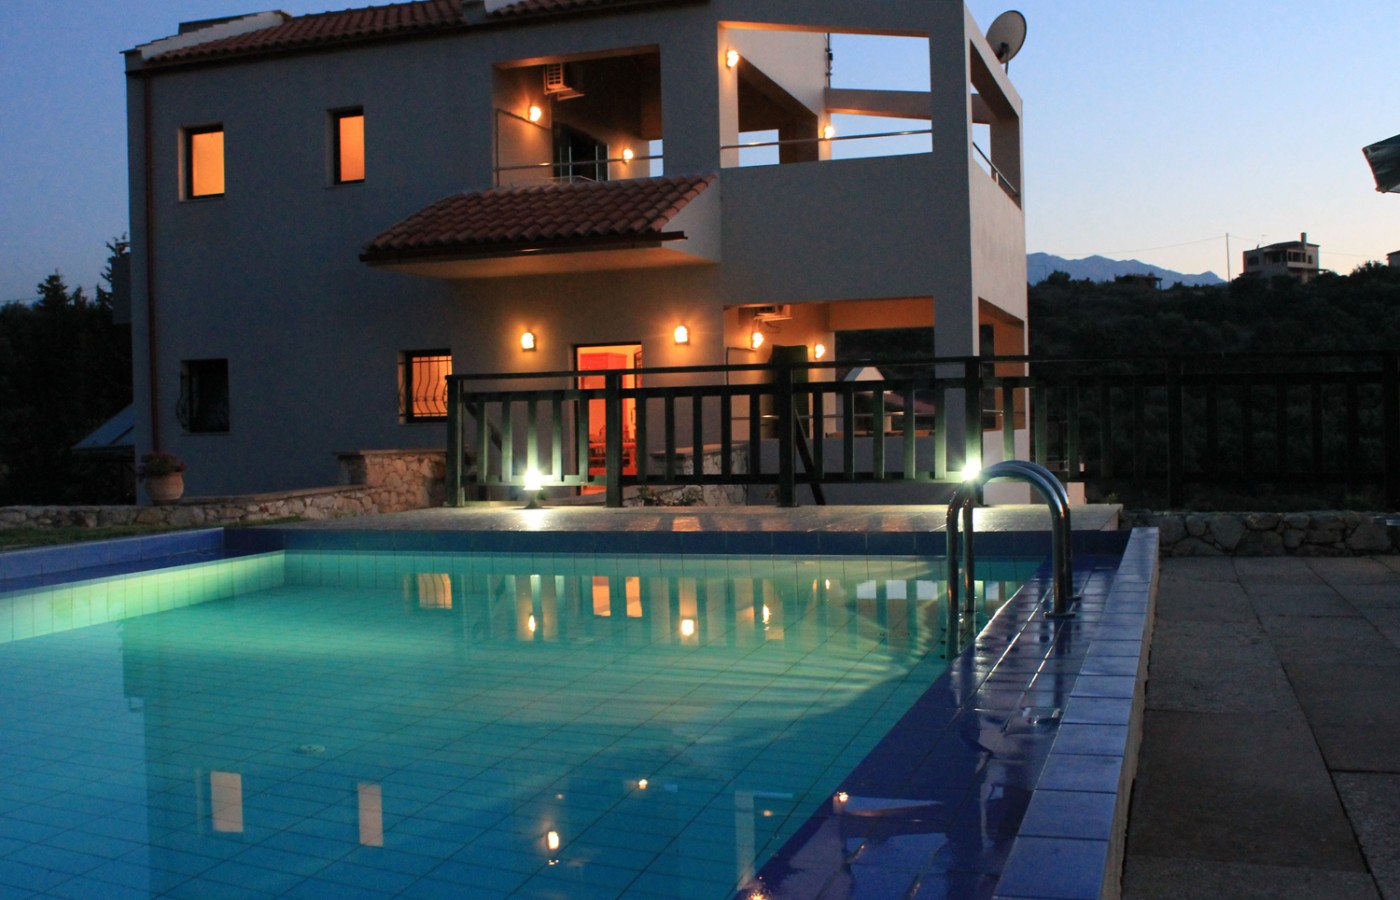 Villas-almyrida - Private villas with panoramic view of Almyrida village and almirida beach - Private pool